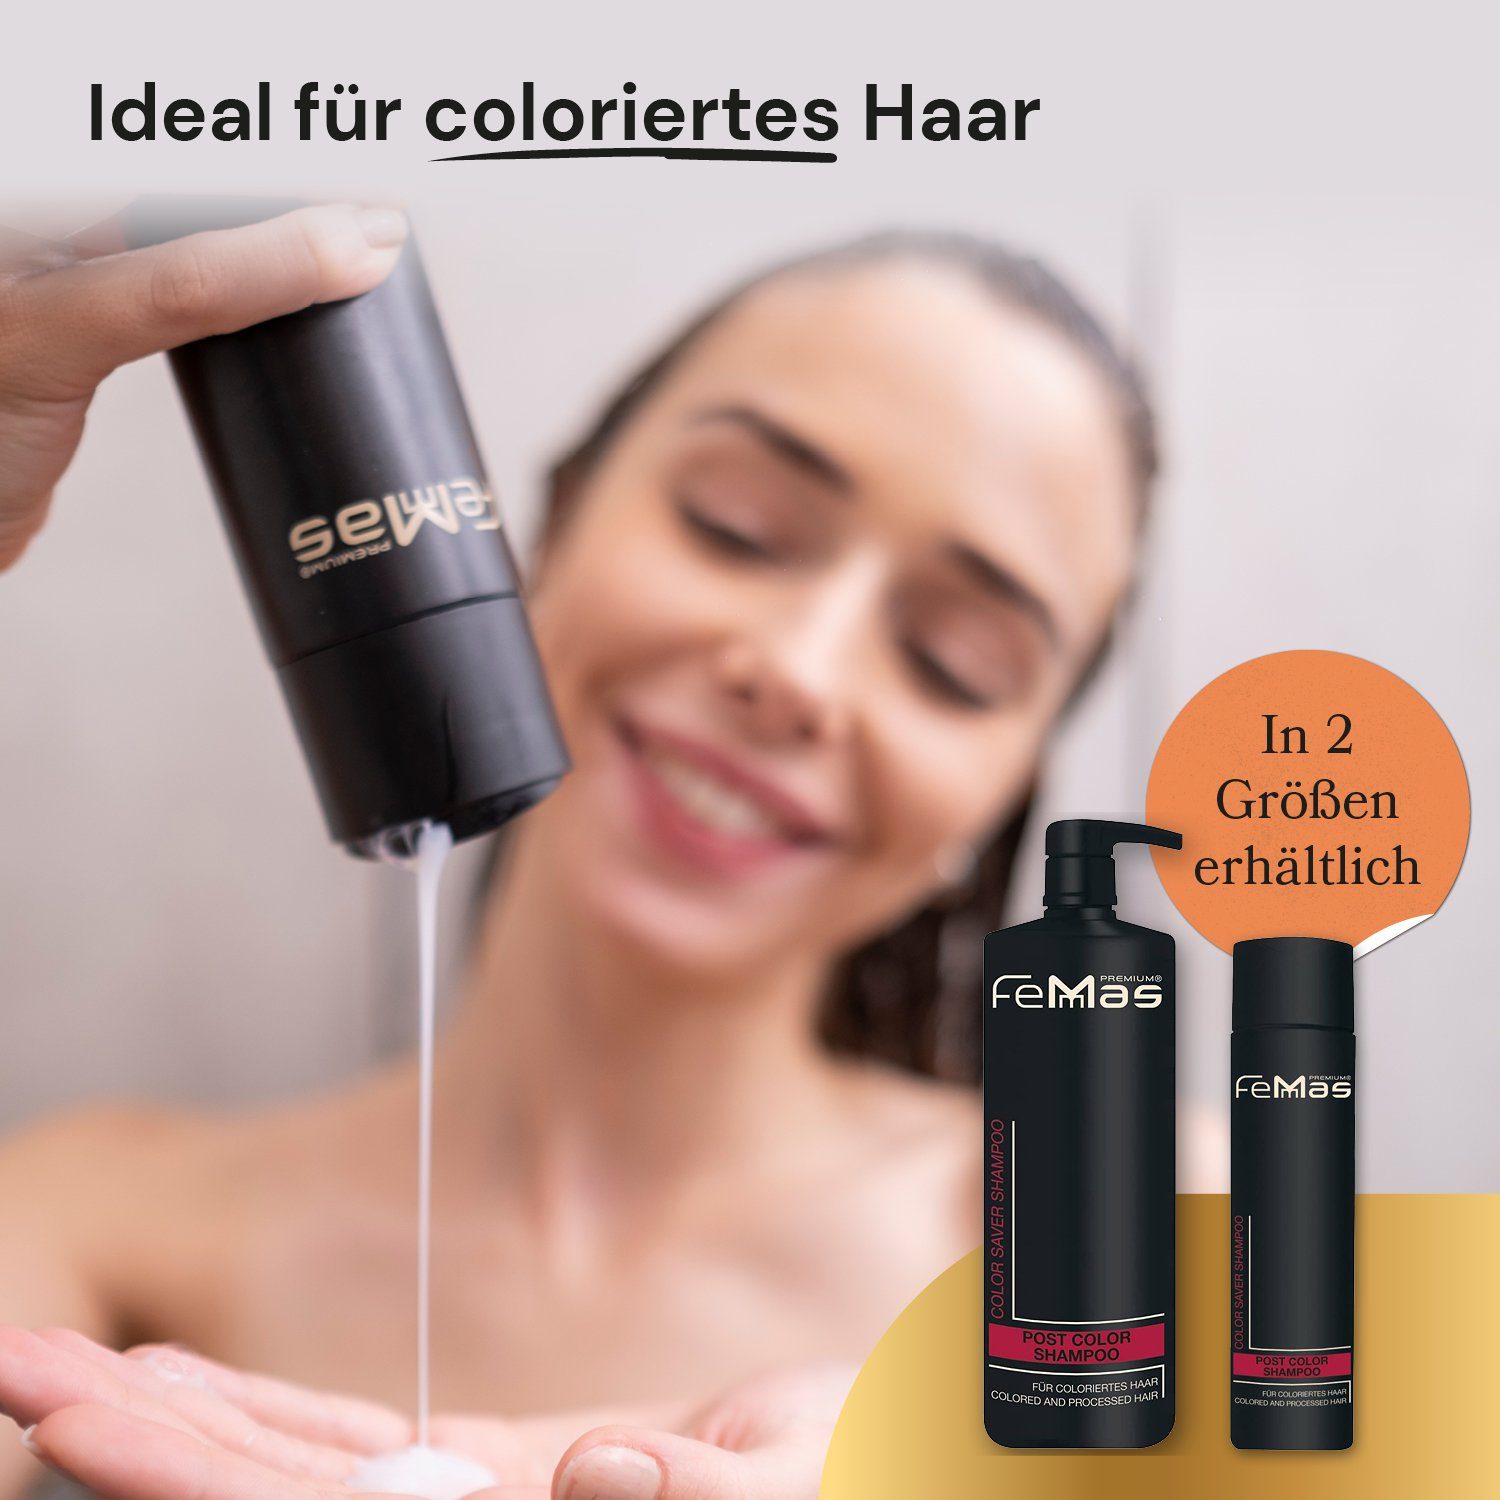 Color Premium Color Haarpflege-Set FemMas Saver Saver Shampoo 250ml Maske 250ml + Femmas